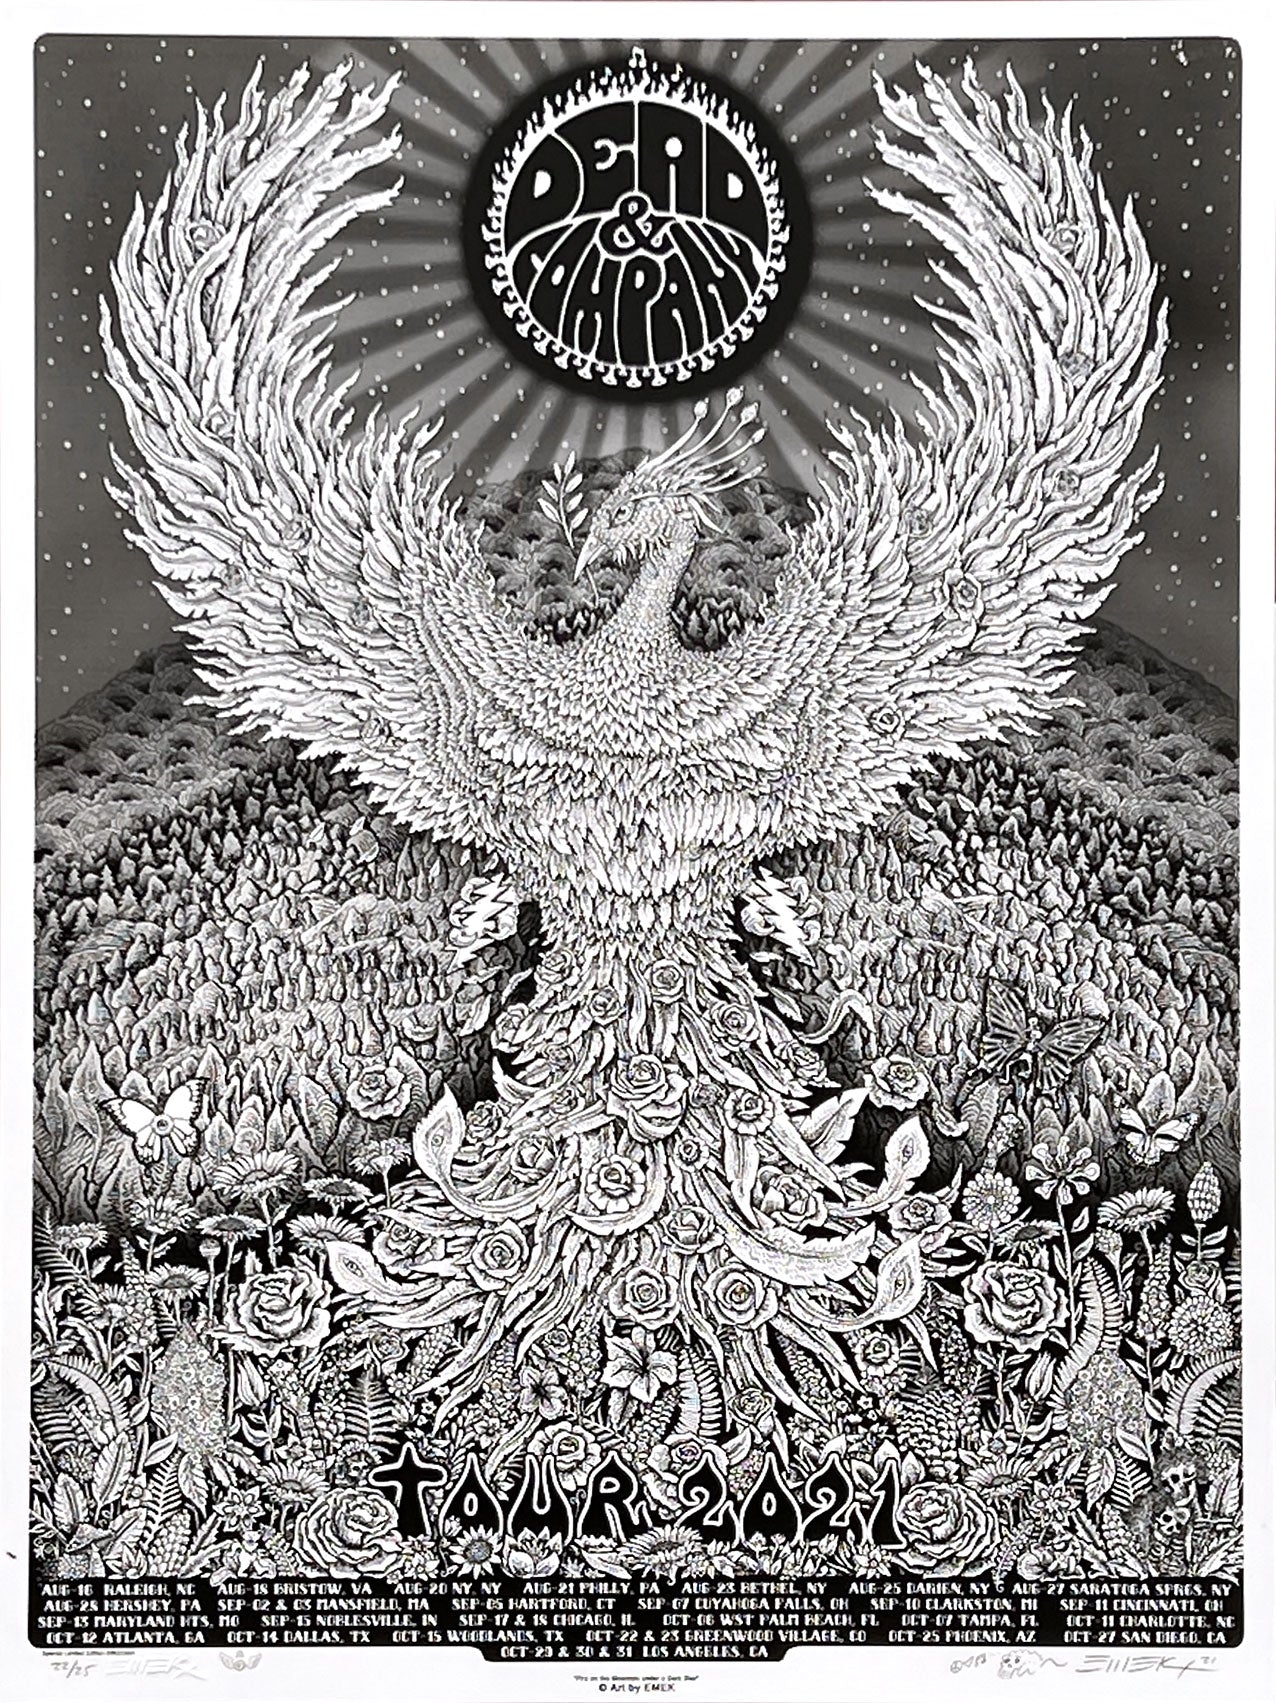 Dead Phoenix B+W Paper Poster by Emek